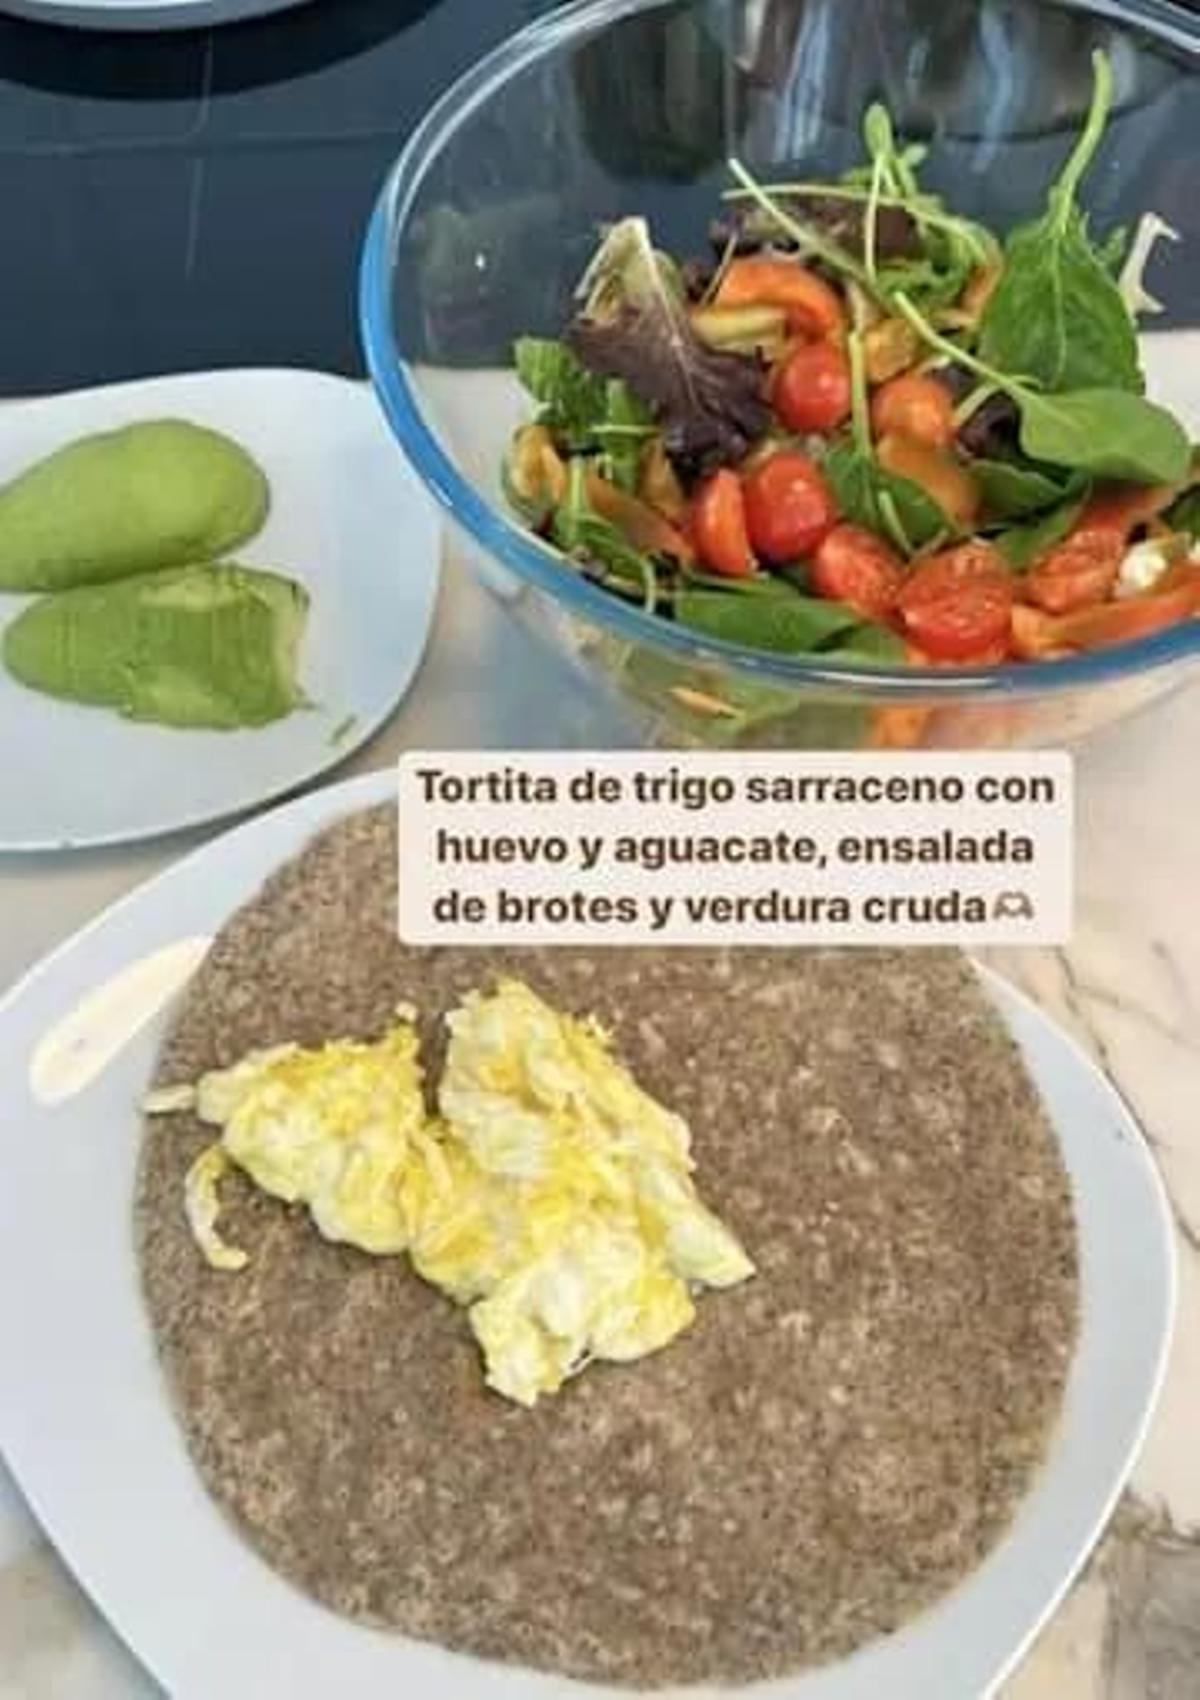 Violeta Mangriñán comparte su receta saludable de tortitas de trigo sarraceno con aguacate y huevos revueltos